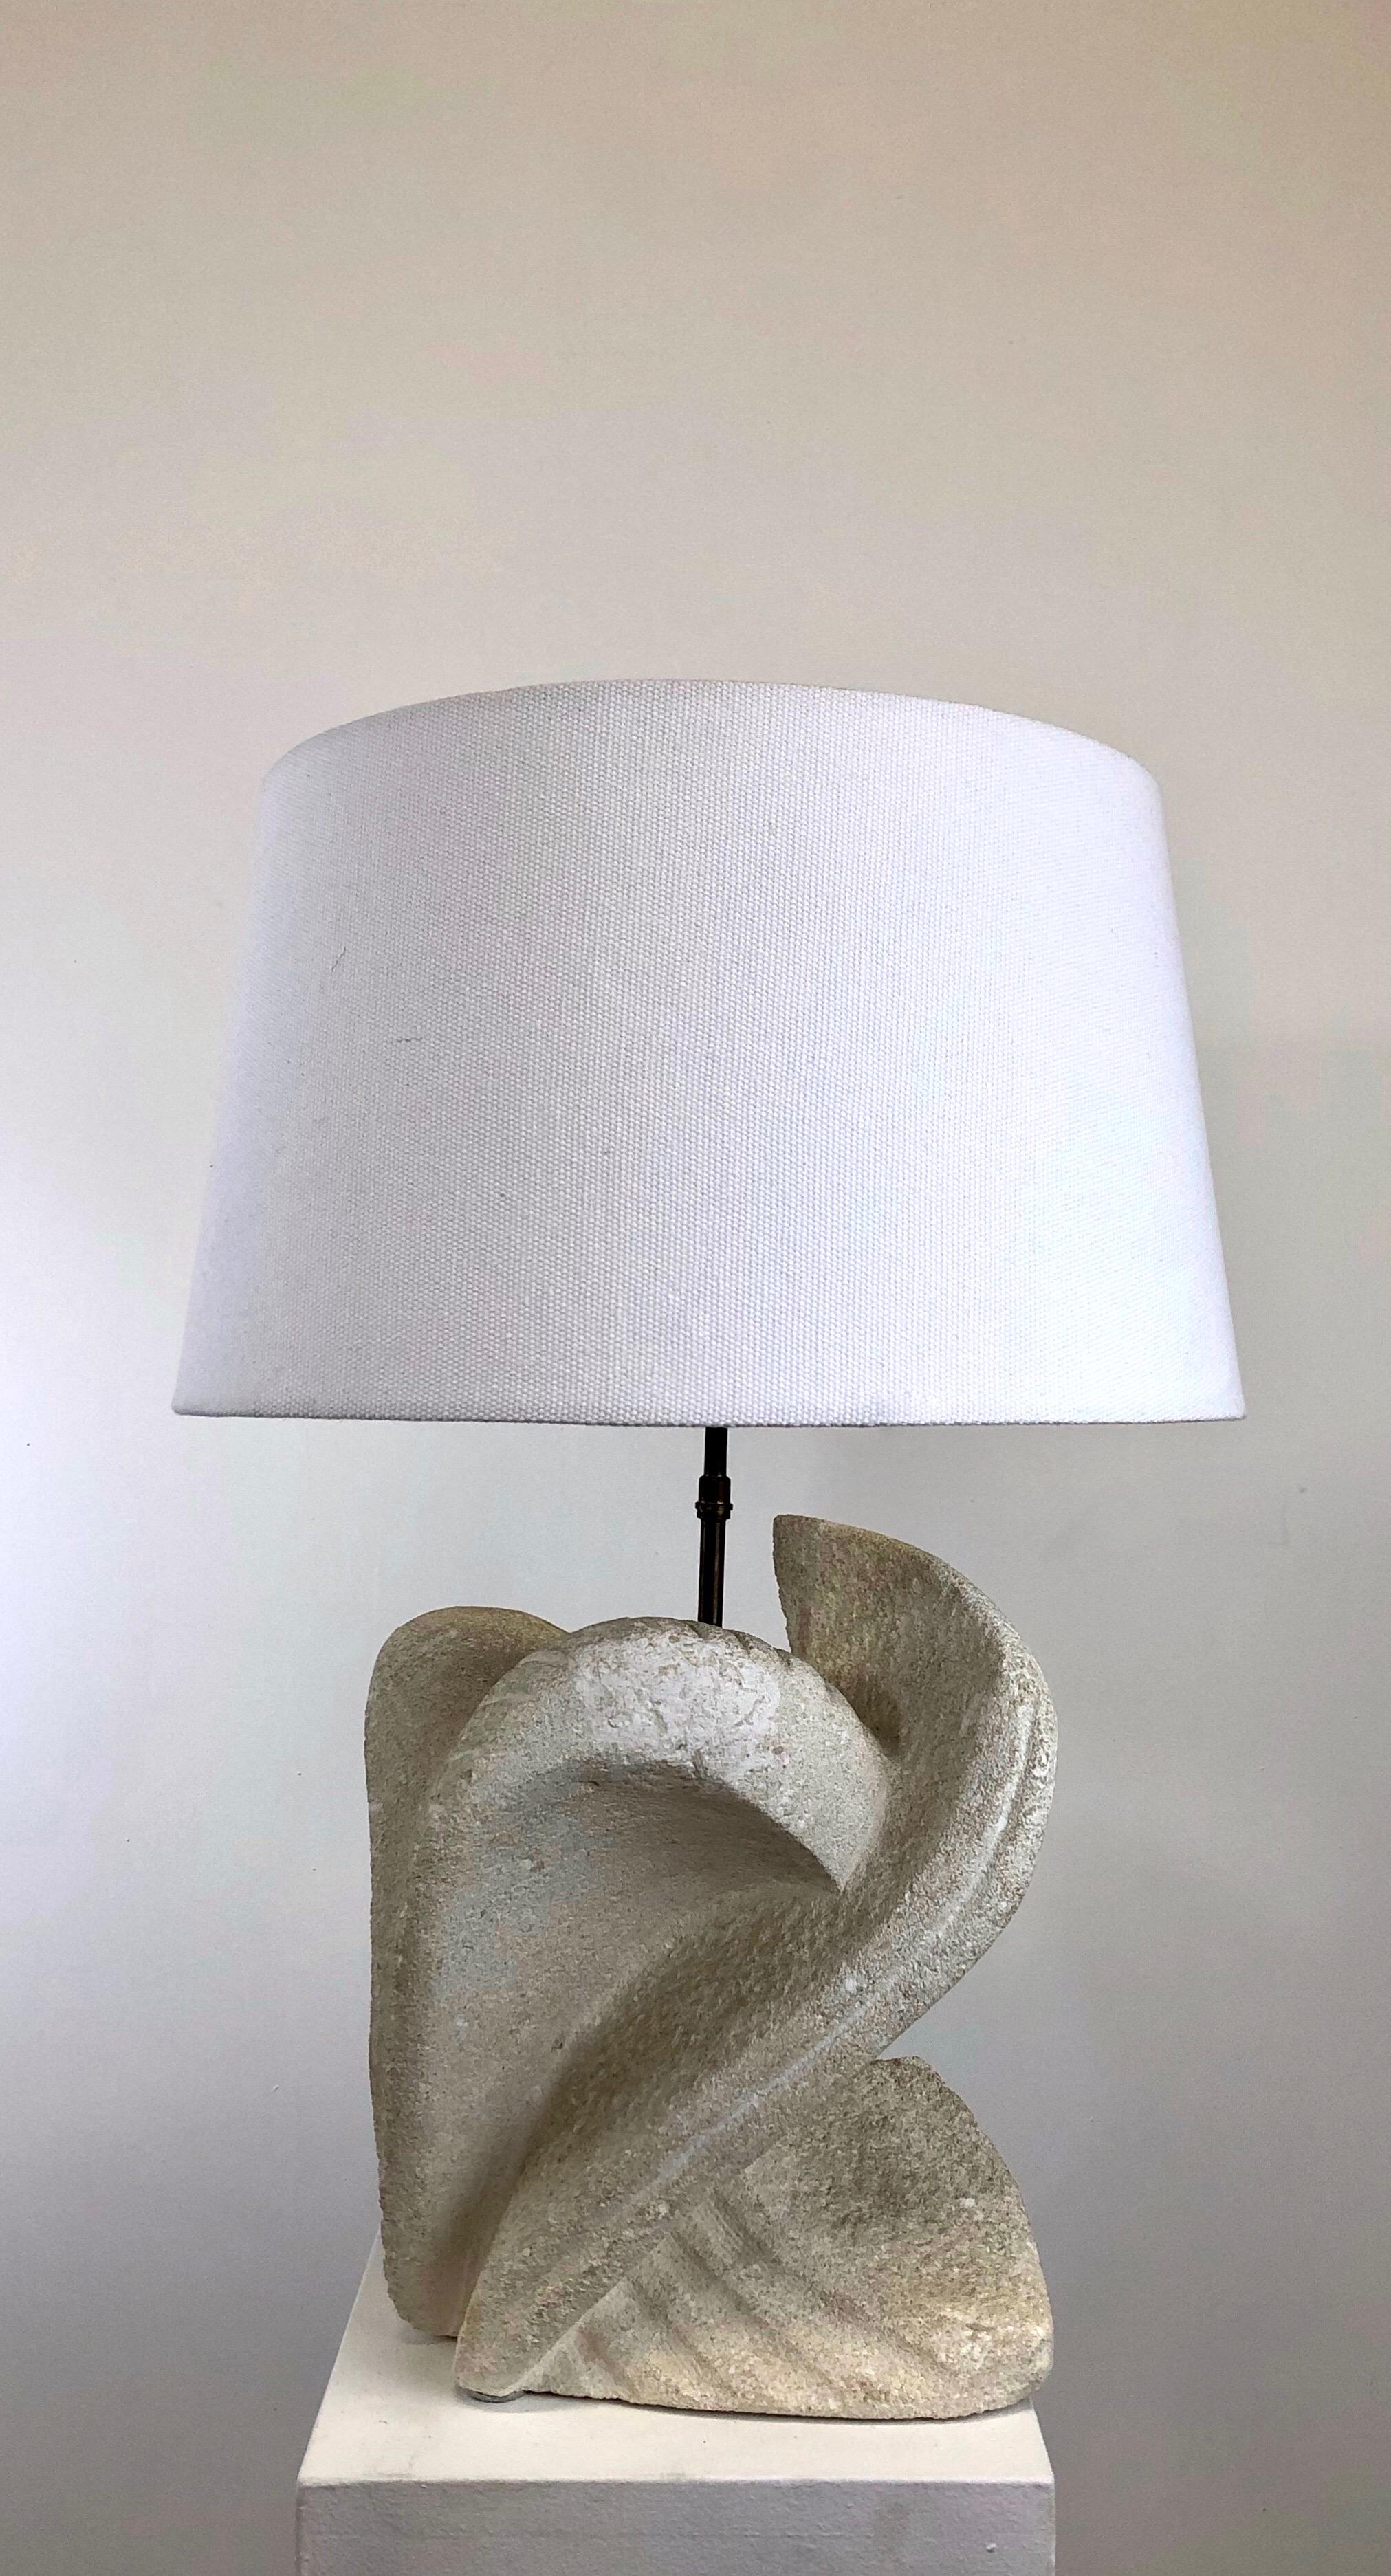 Vintage-Lampe aus massivem, geschnitztem Kalkstein aus den 1970er Jahren von Albert Tormos, Frankreich. 
Neu verkabelt und mit einer neuen, maßgeschneiderten Beschattung ausgestattet. 

Atemberaubende Form.

Maßnahmen: 
Der Sockel ist 26 x 20